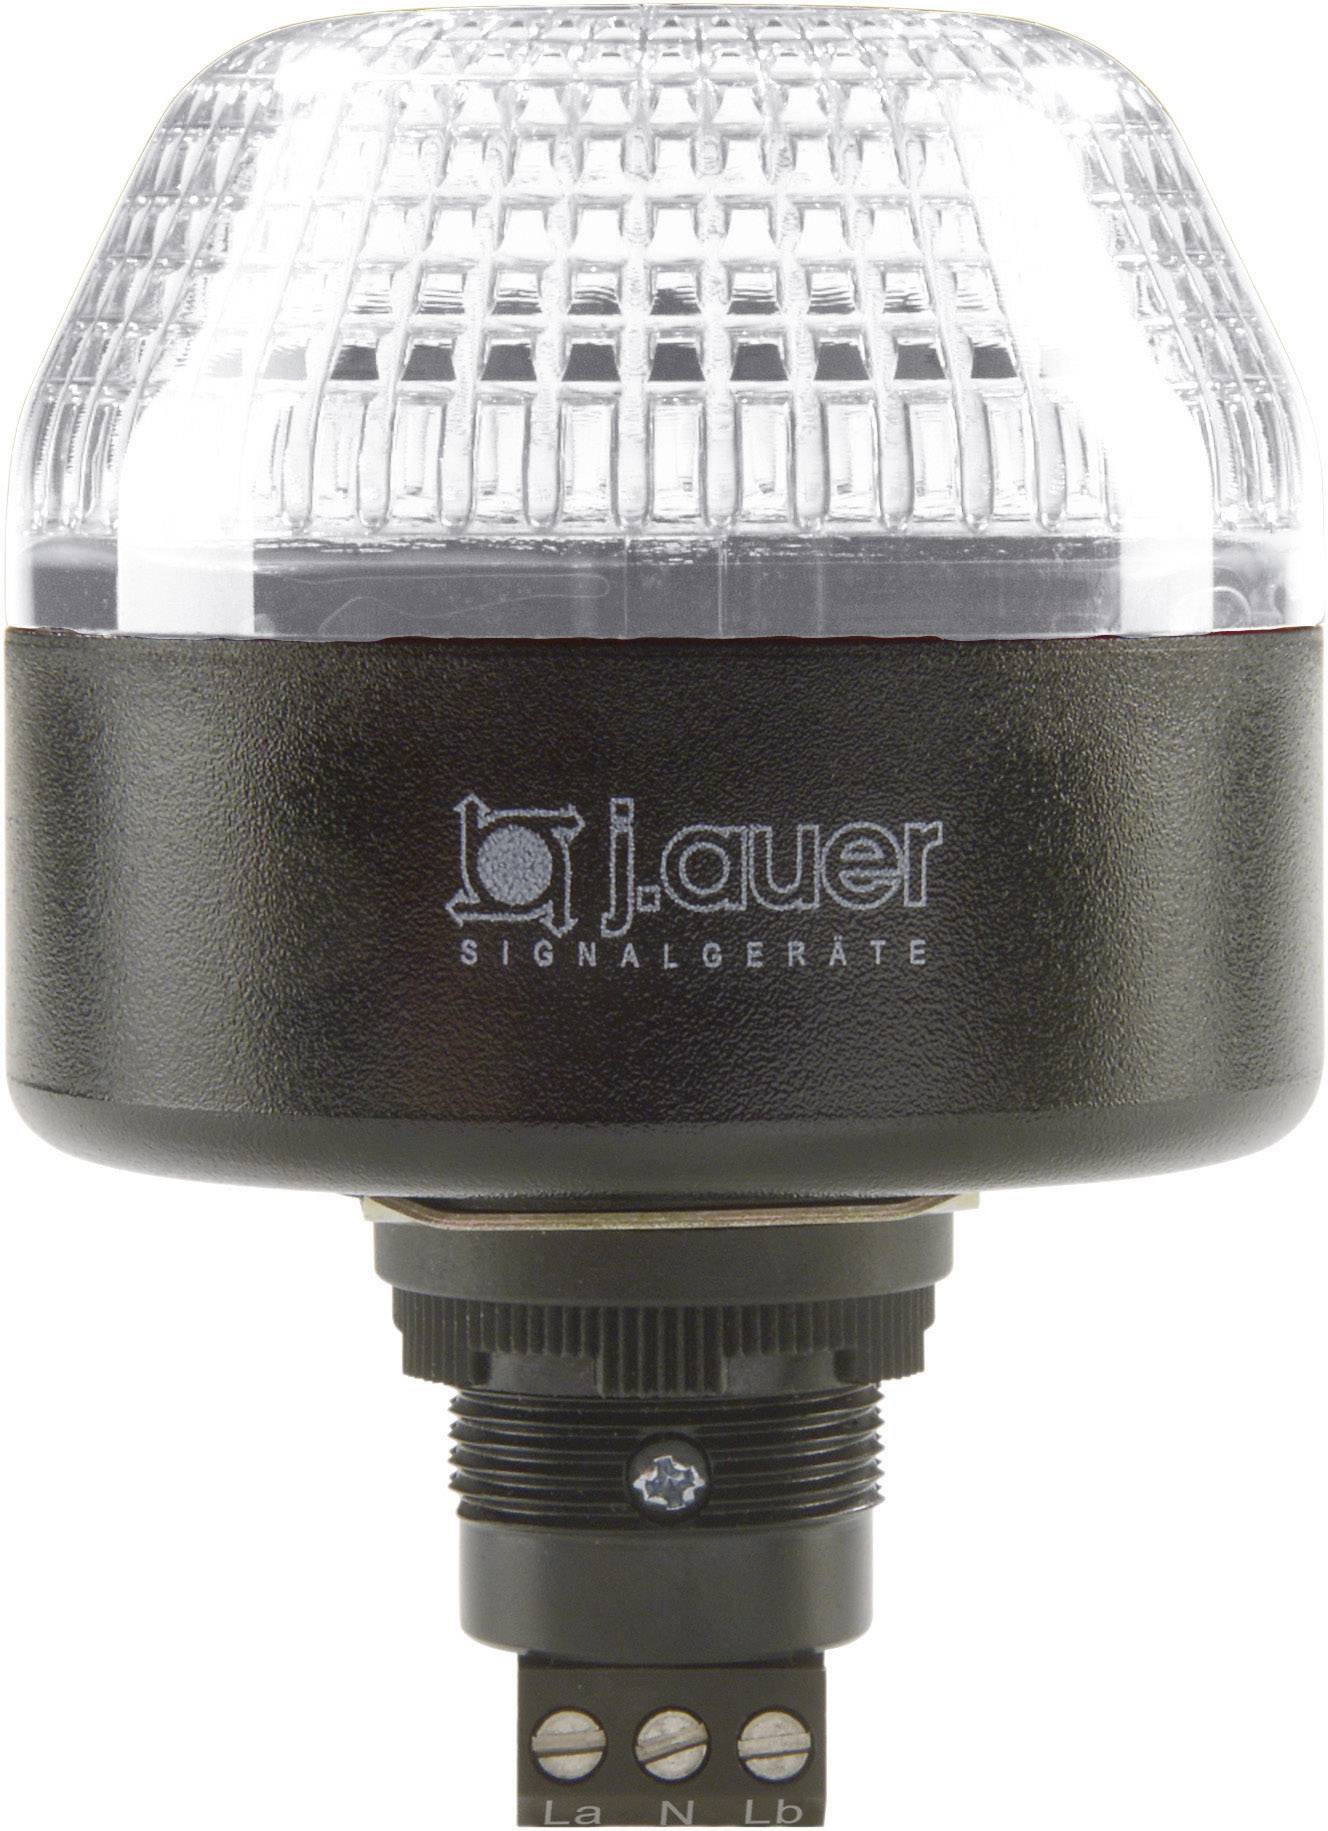 AUER SIGNAL Signalleuchte LED Auer Signalgeräte IBL Klar Dauerlicht, Blinklicht 24 V/DC, 24 V/AC